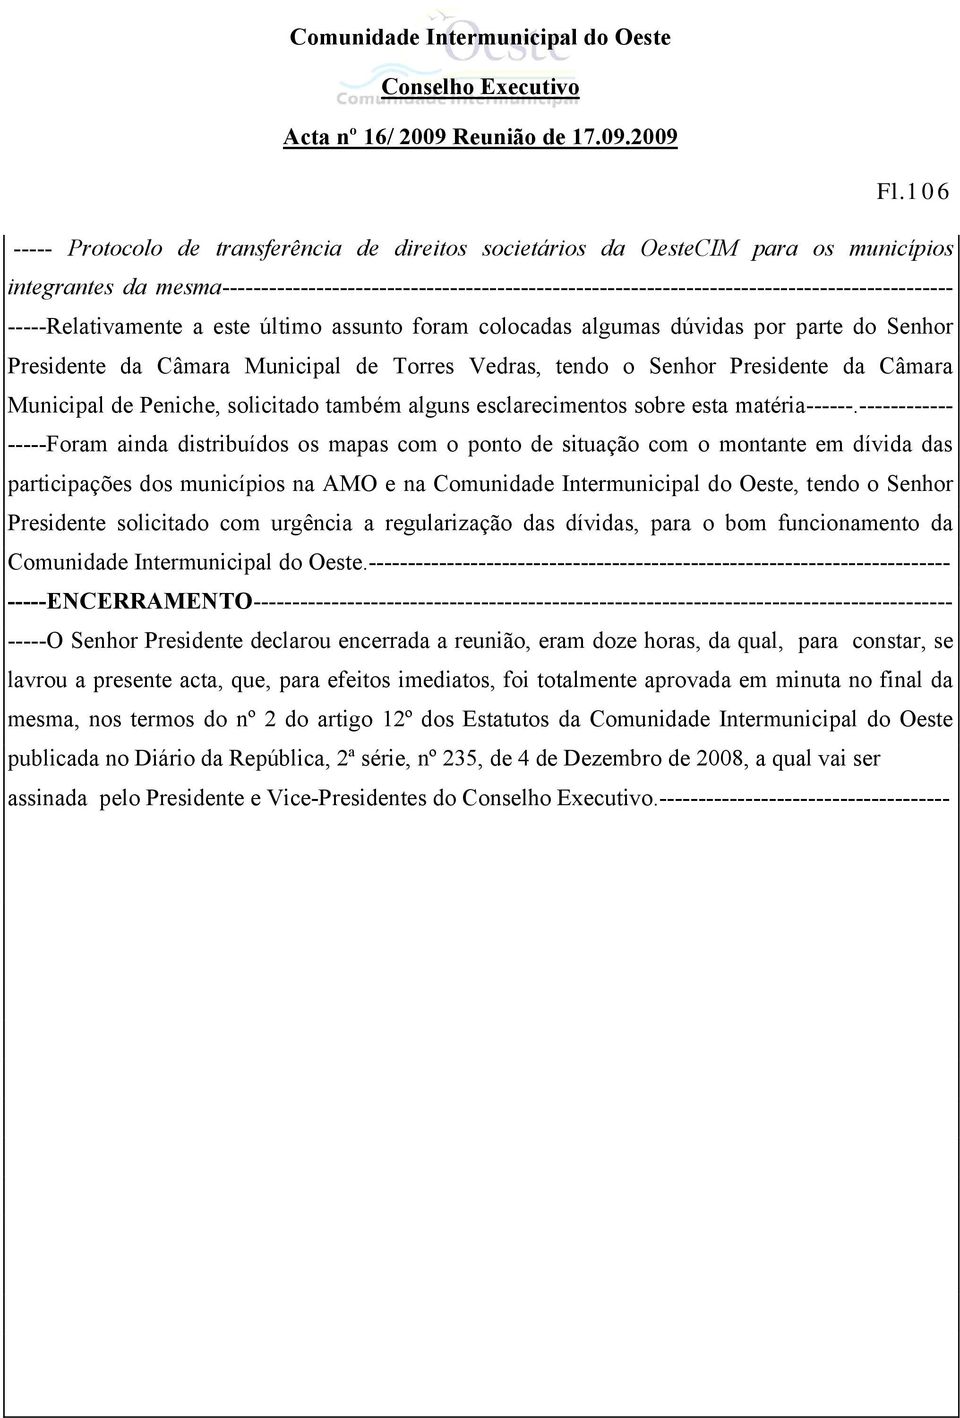 Presidente da Câmara Municipal de Torres Vedras, tendo o Senhor Presidente da Câmara Municipal de Peniche, solicitado também alguns esclarecimentos sobre esta matéria------.